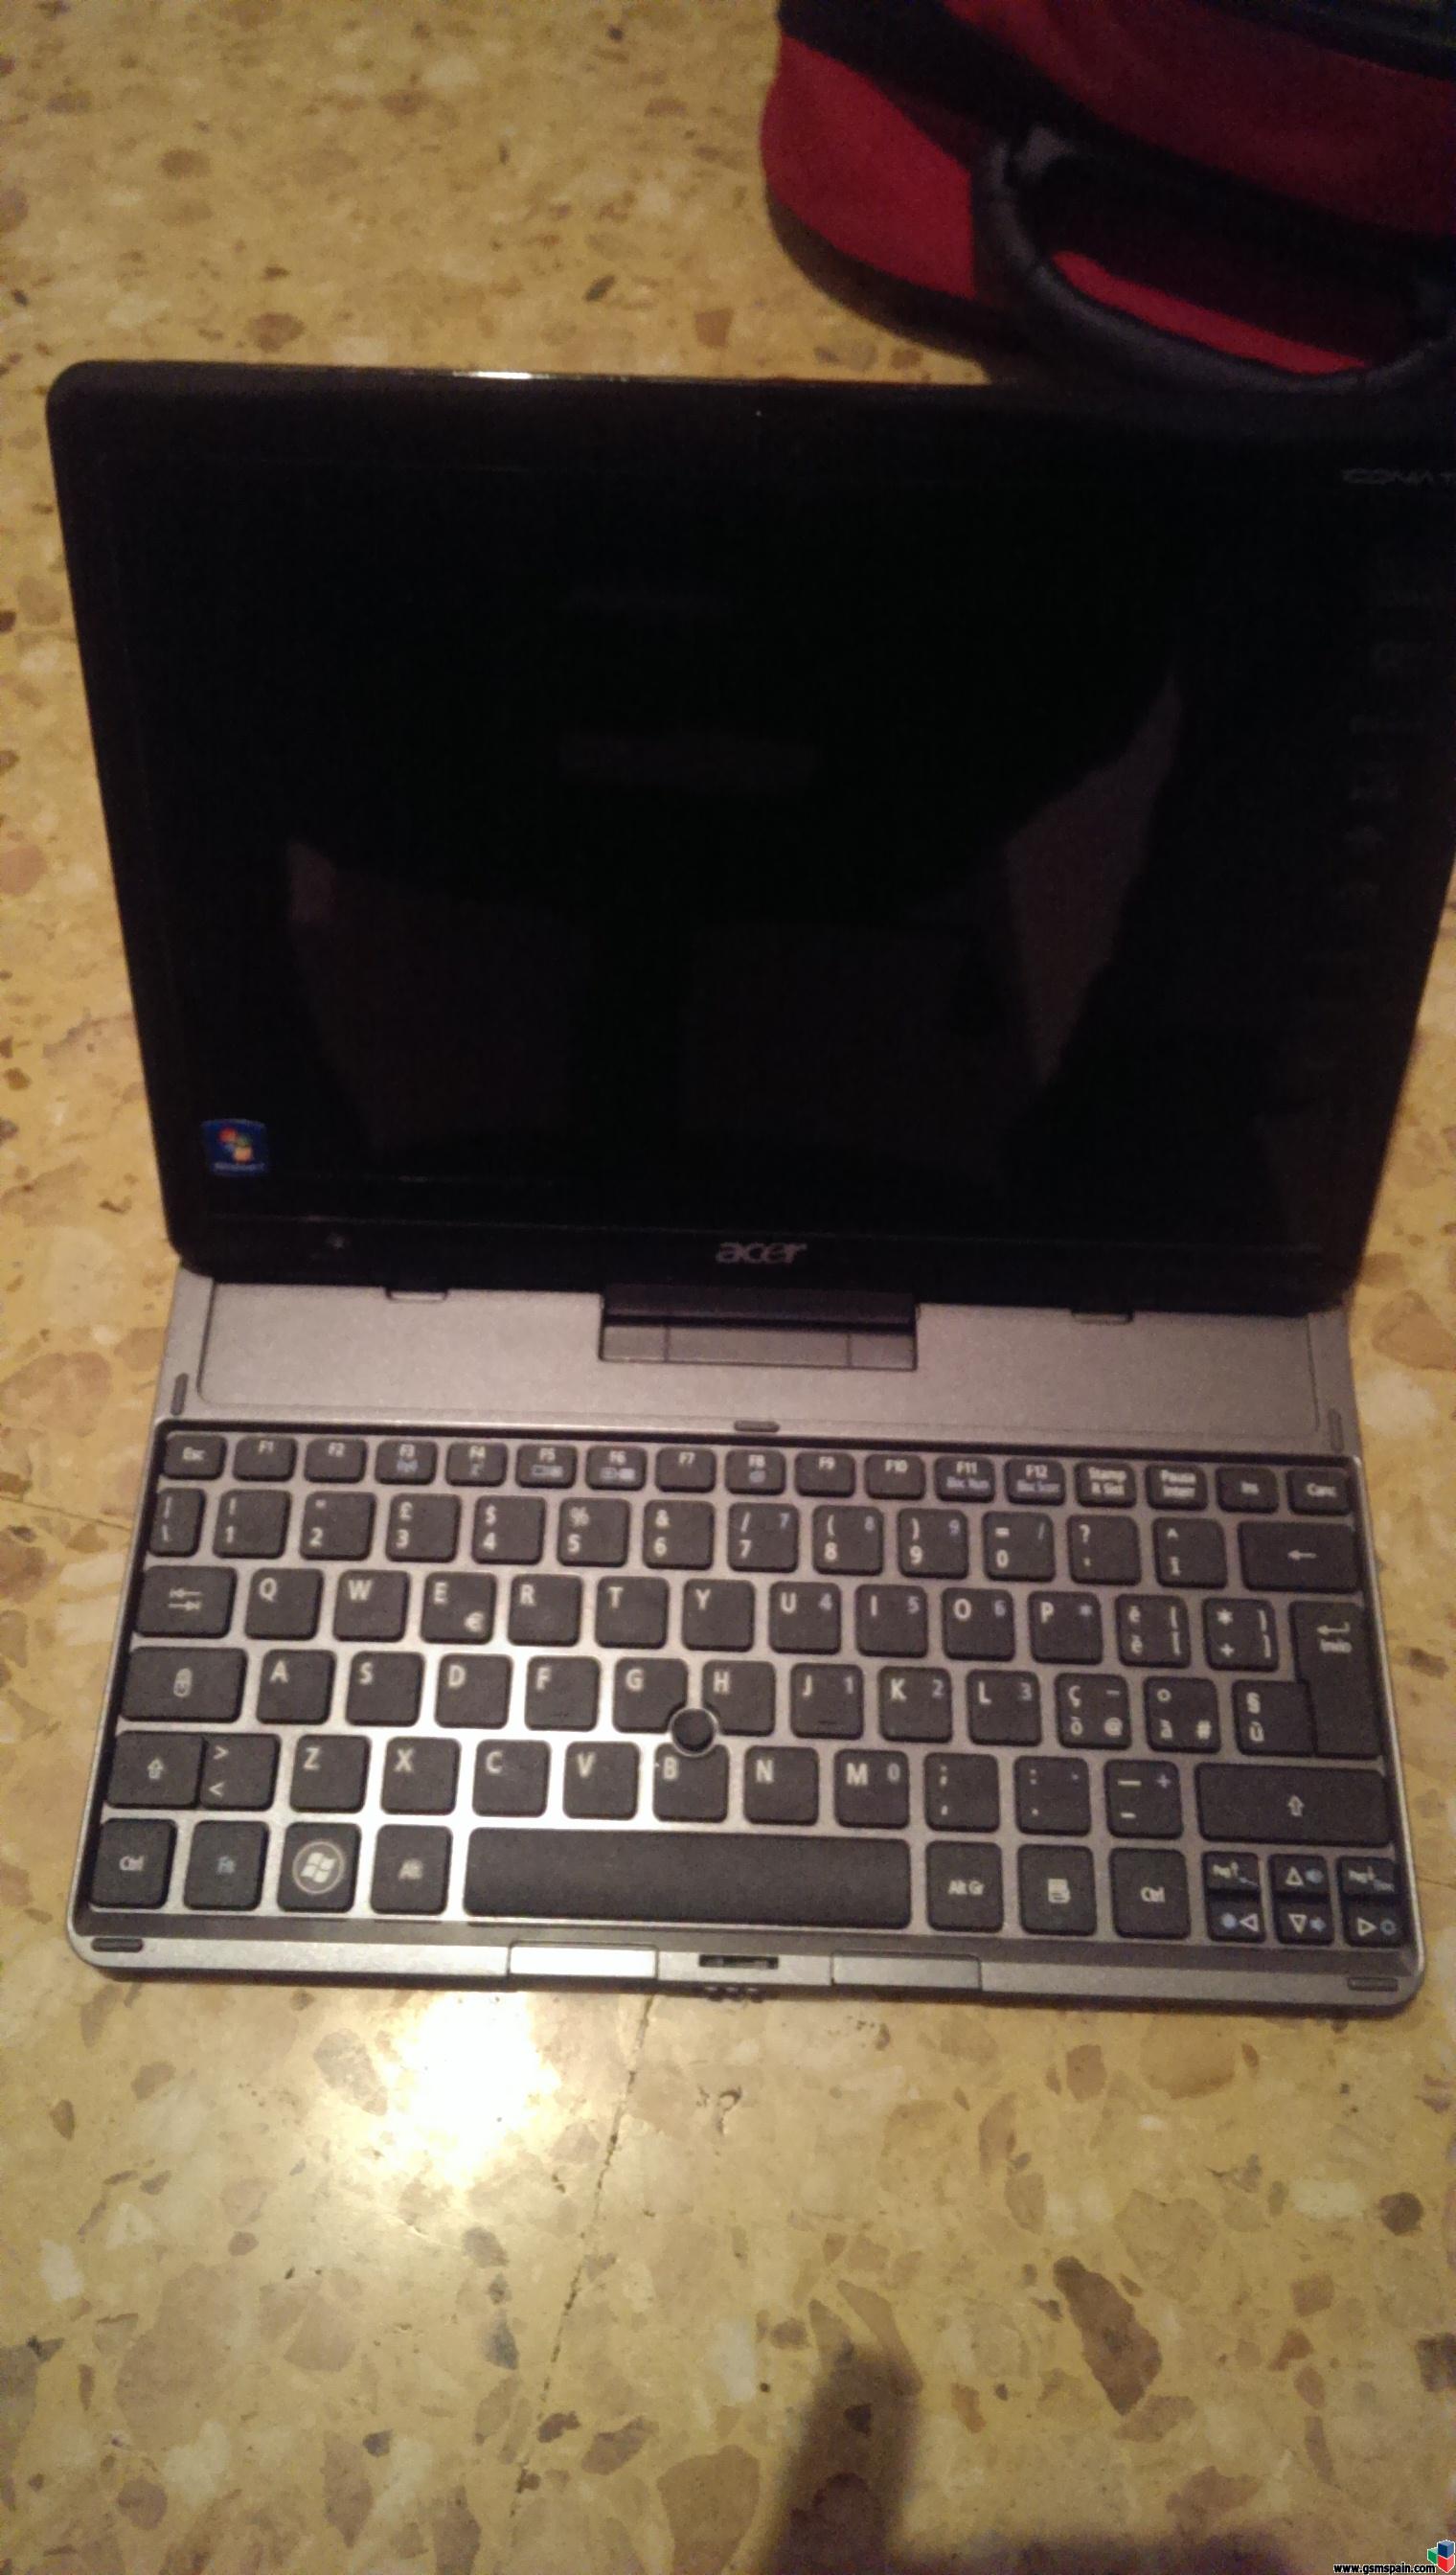 [VENDO] Acer w500 ,buen estado,w8,teclado,tactil , 2gb ram,32gb ssd .230e